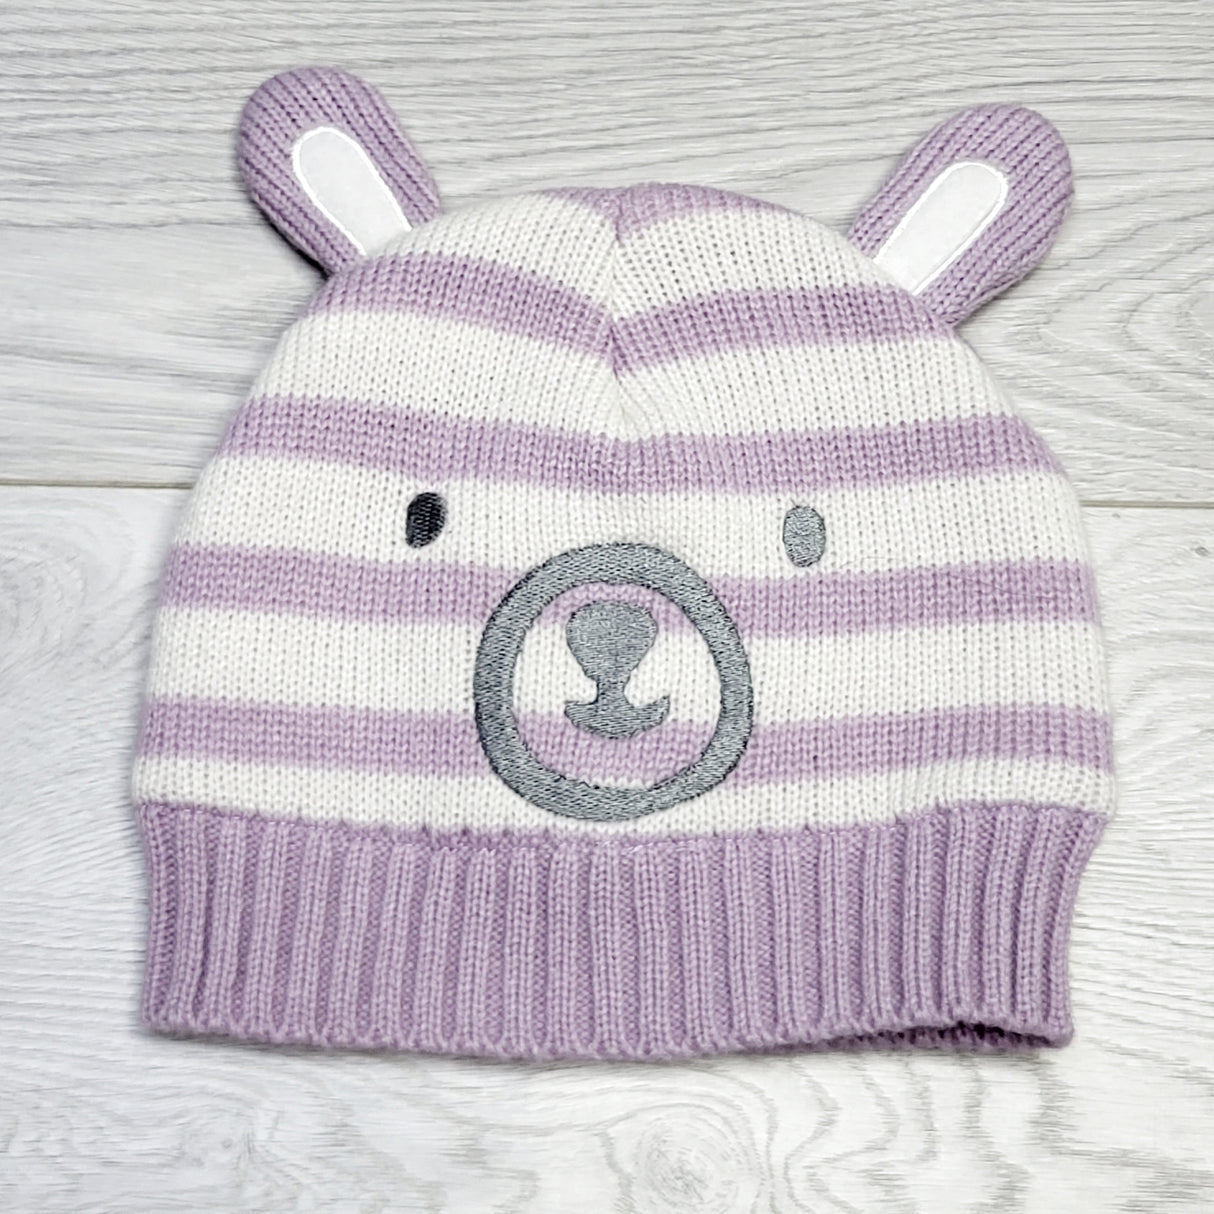 MSNDS1 - Joe purple striped fleece lined bear hat. Size 2/3T